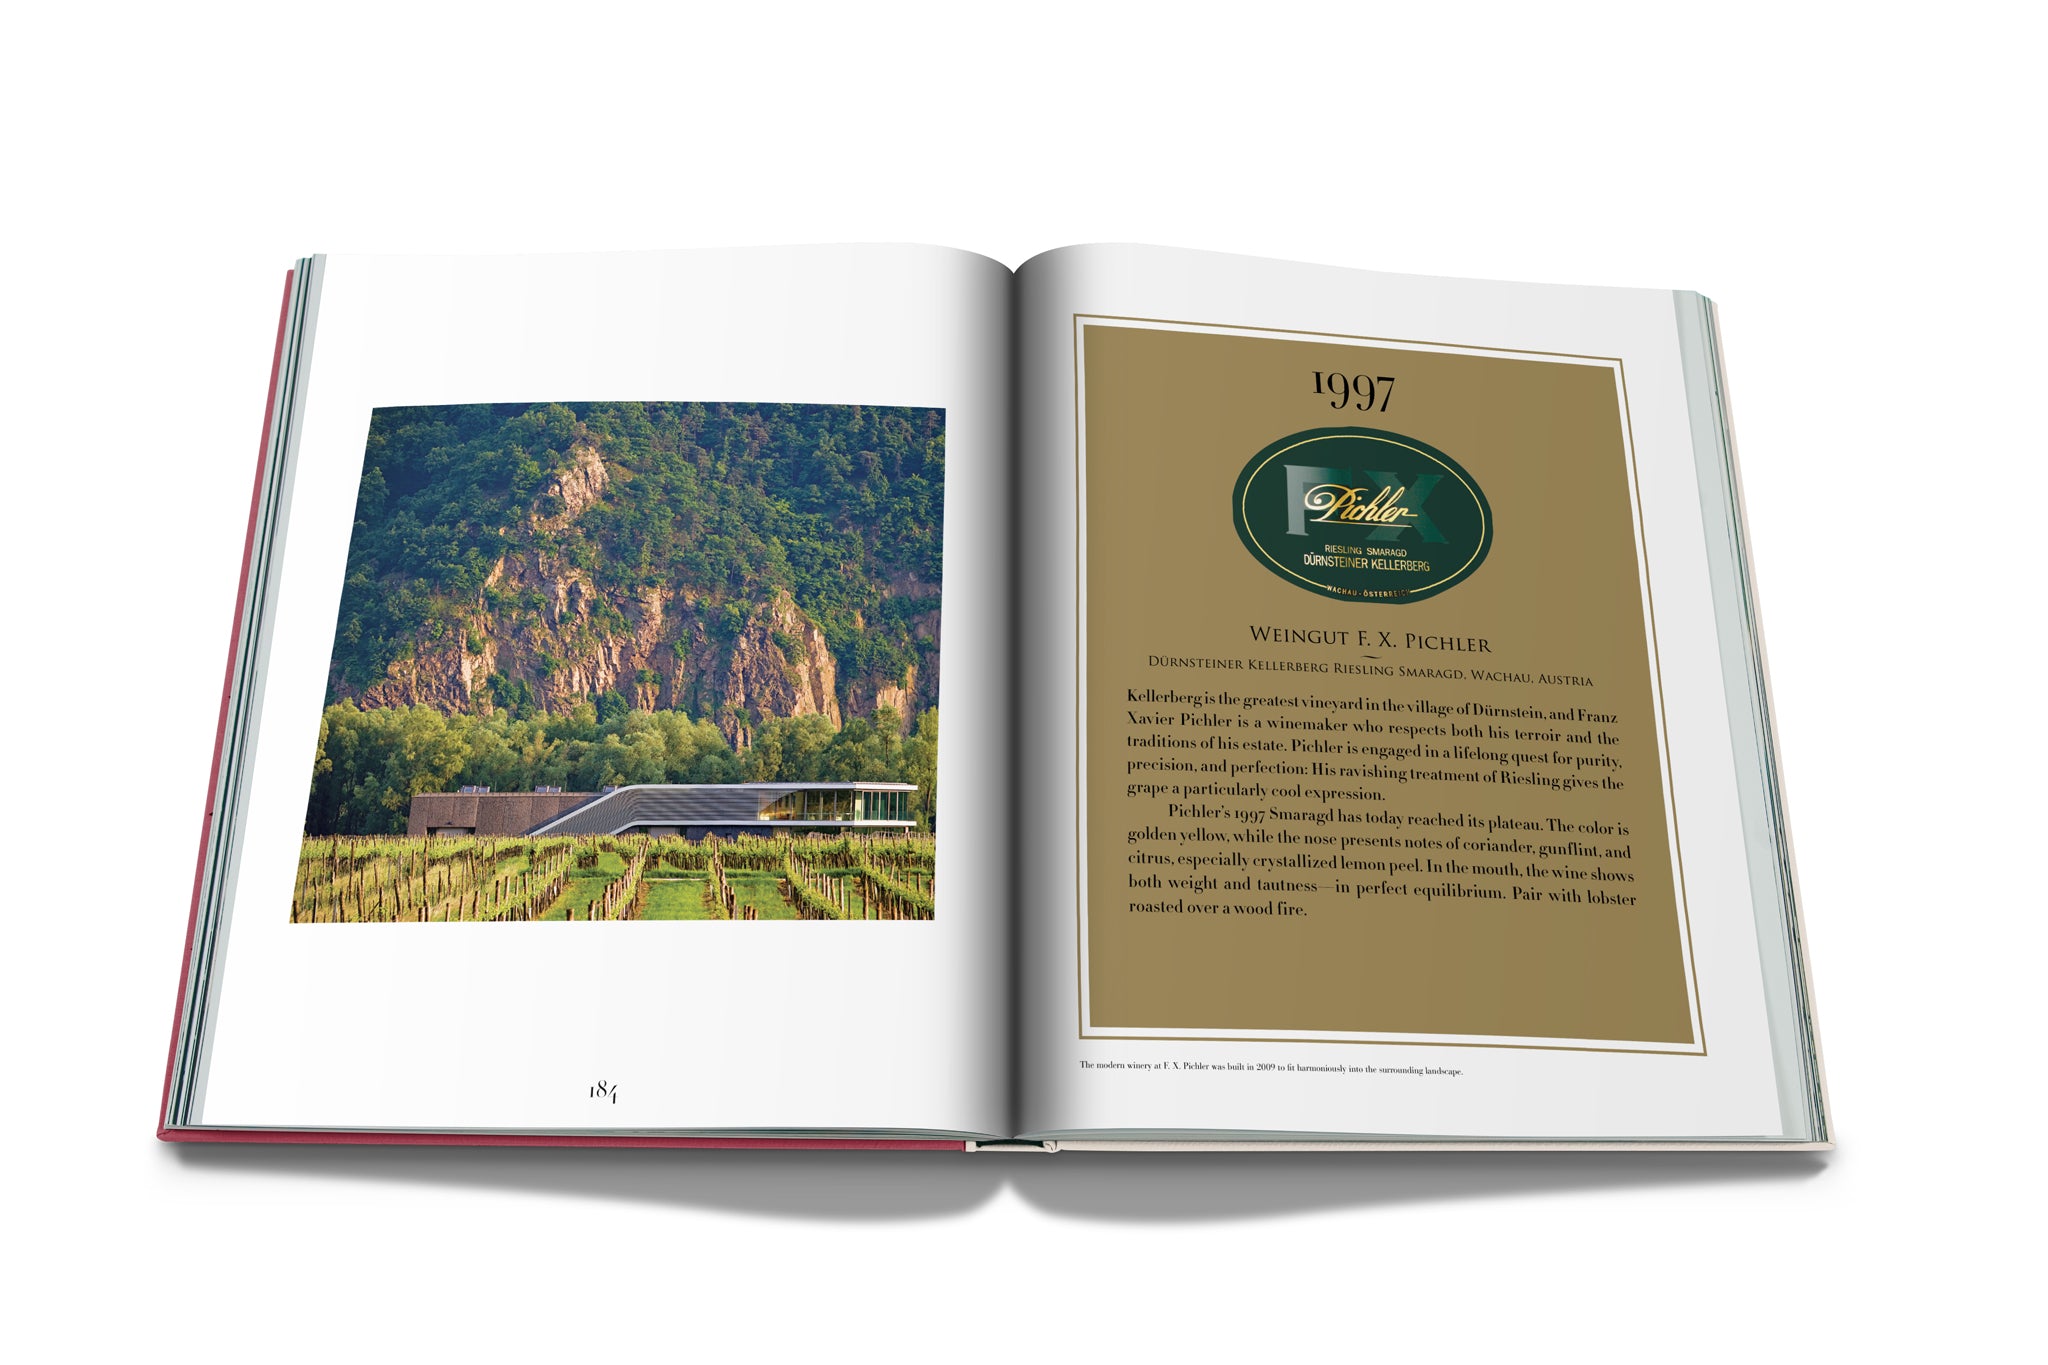 The Impossible Collection of Wine in  präsentiert im Onlineshop von KAQTU Design AG. Kunstgegenstände ist von Assouline